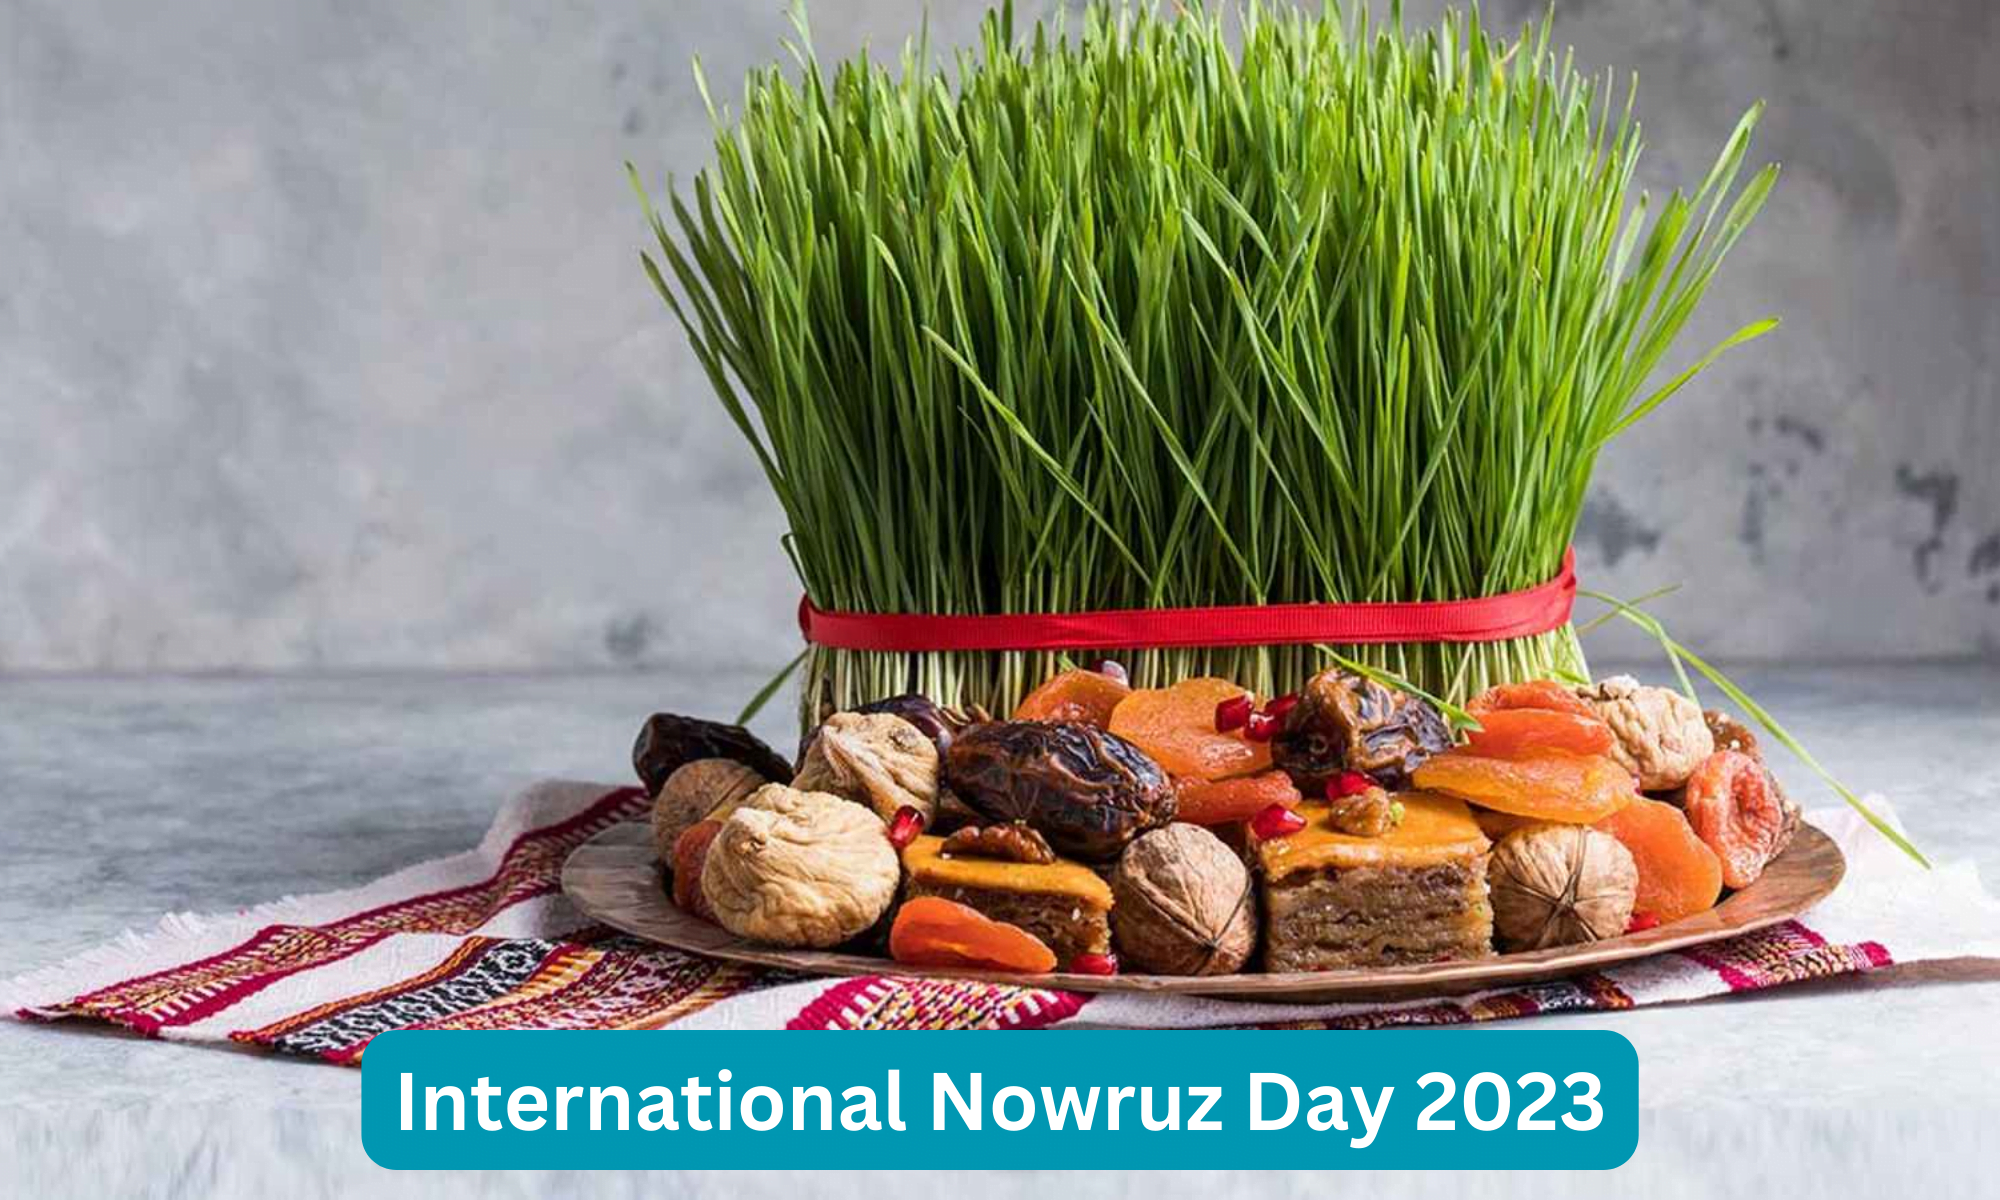 International Nowruz Day 2023